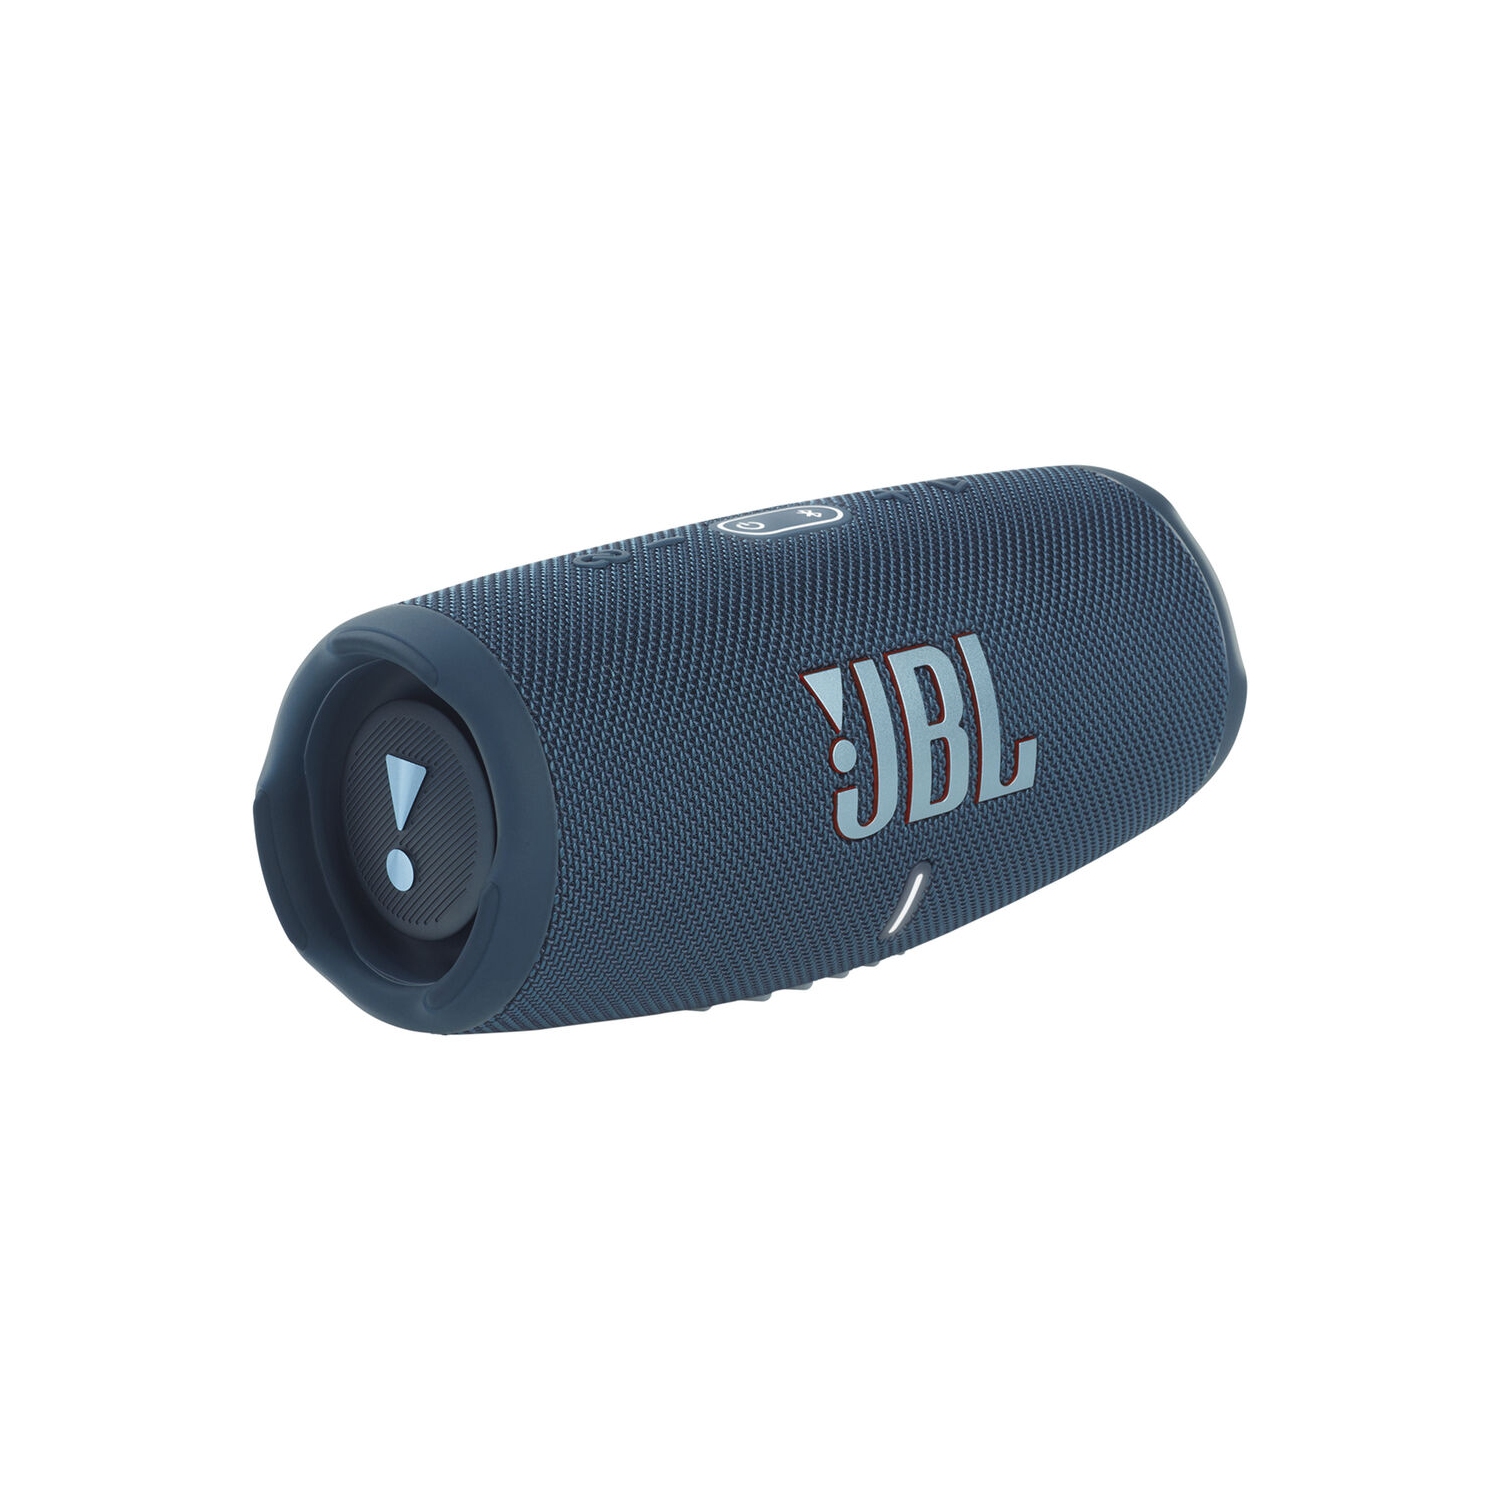 Refurbished (Good) - JBL Charge 5 Portable Waterproof Speaker with Powerbank (Blue)